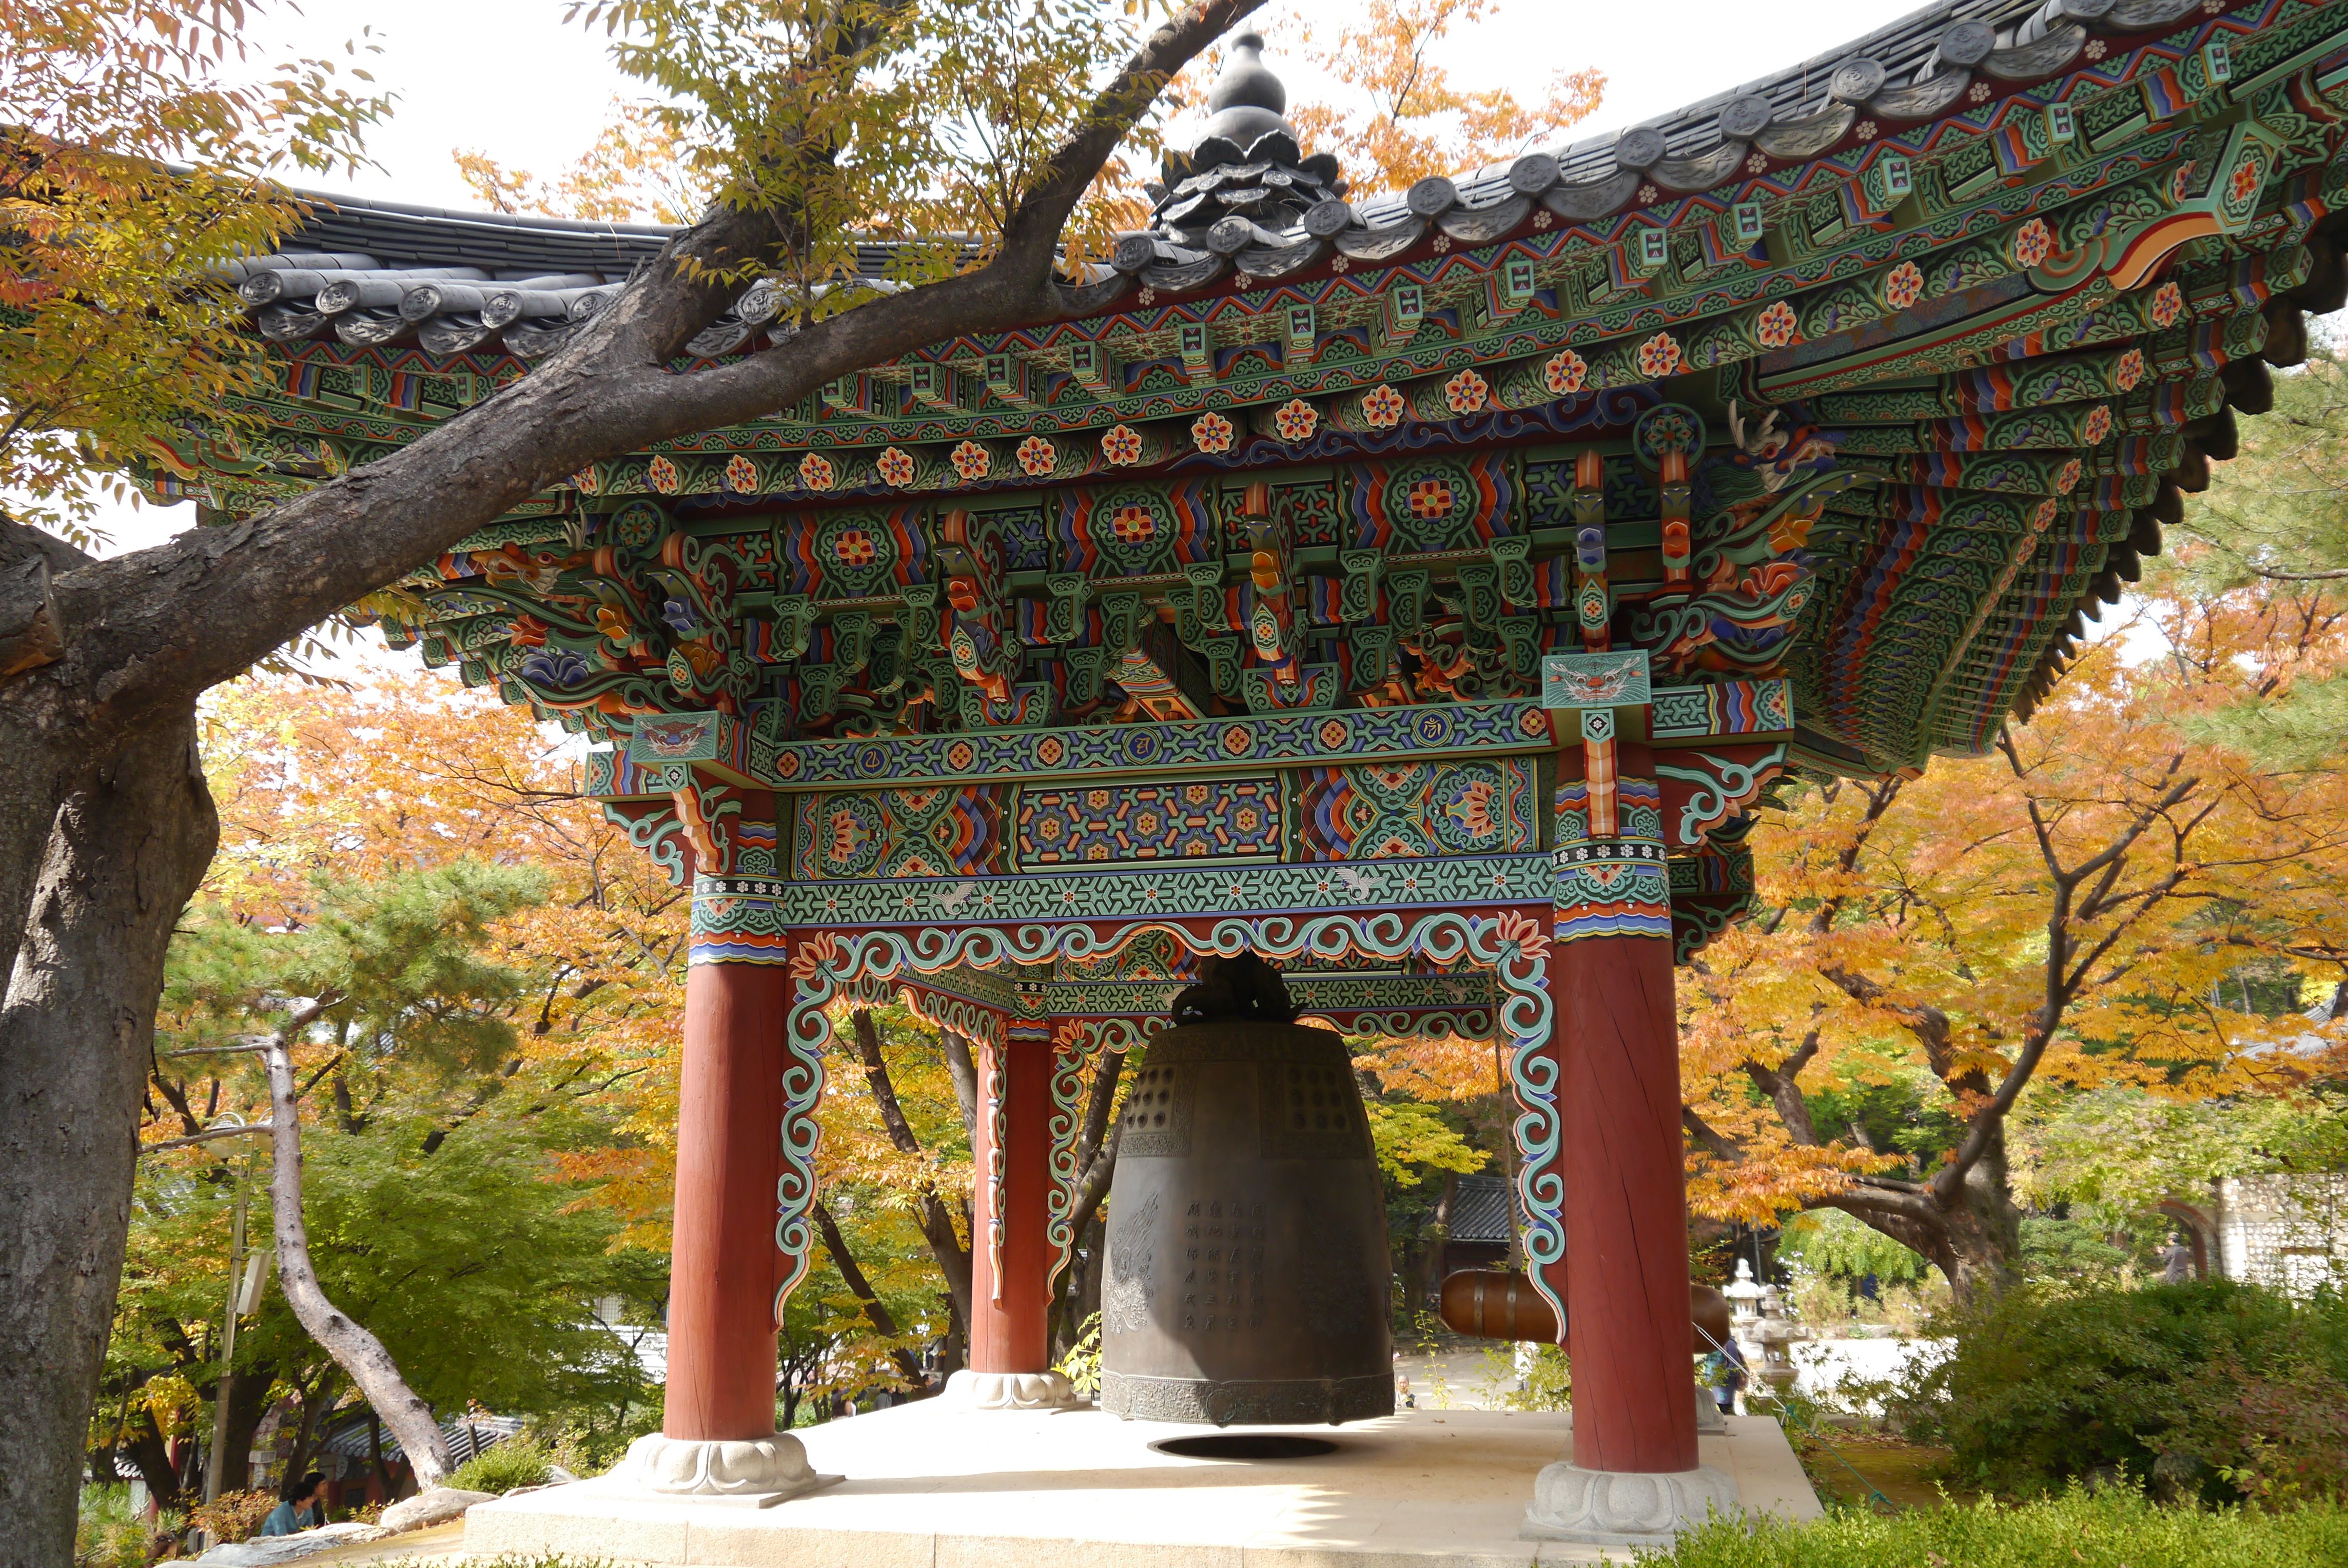 Gilsangsa Buddhist temple bronze bell | Buddhist bells | Pinterest ...